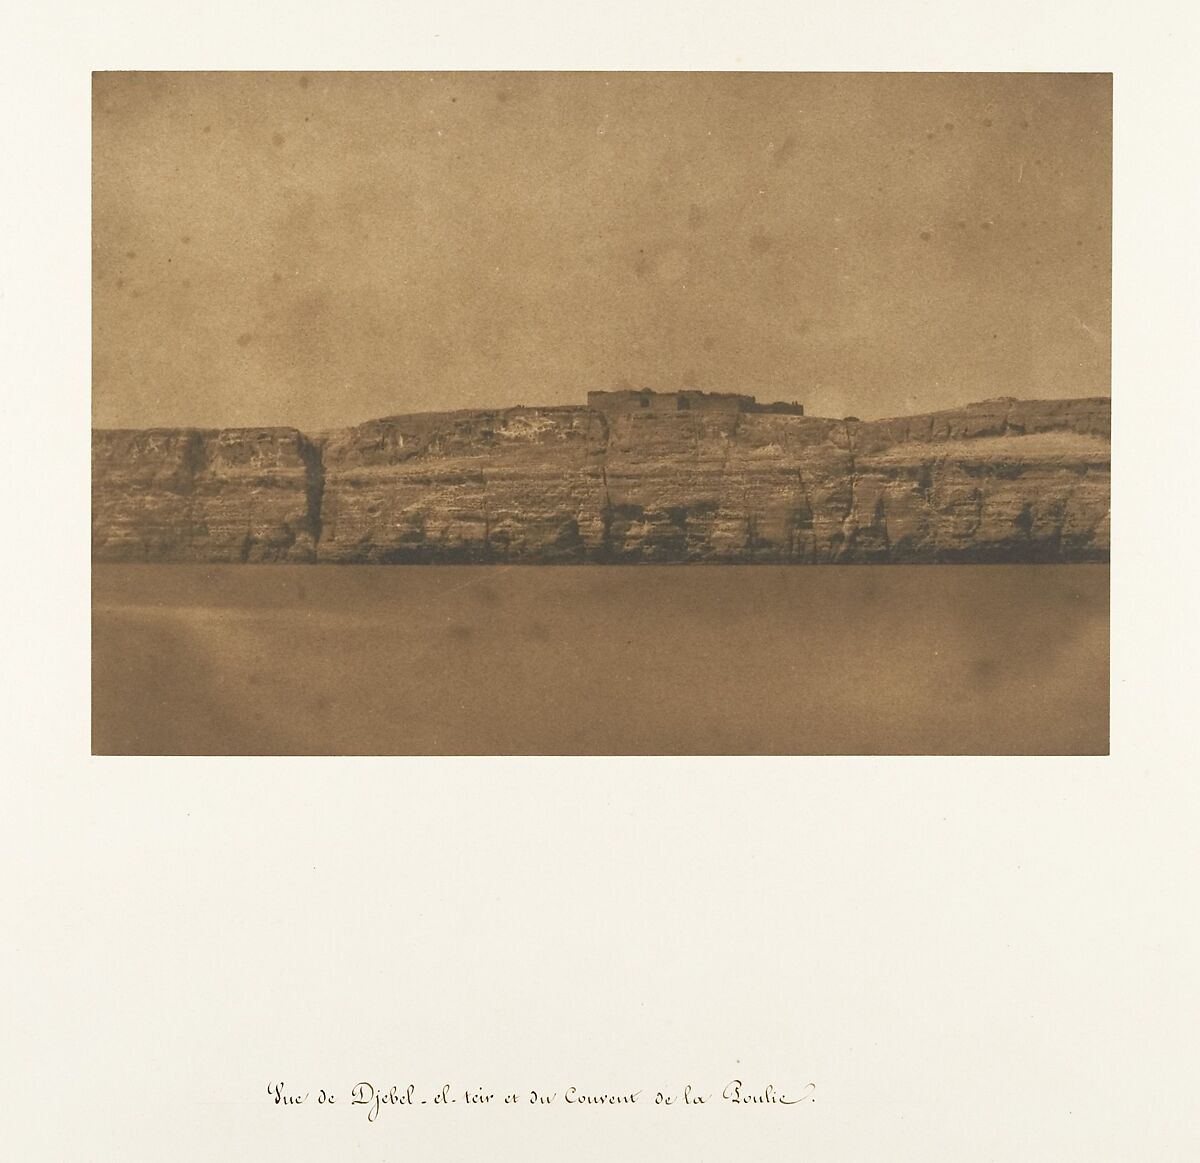 Vue de Djebel-el-teir et du Convent de la Poulie, Maxime Du Camp (French, 1822–1894), Salted paper print from paper negative 